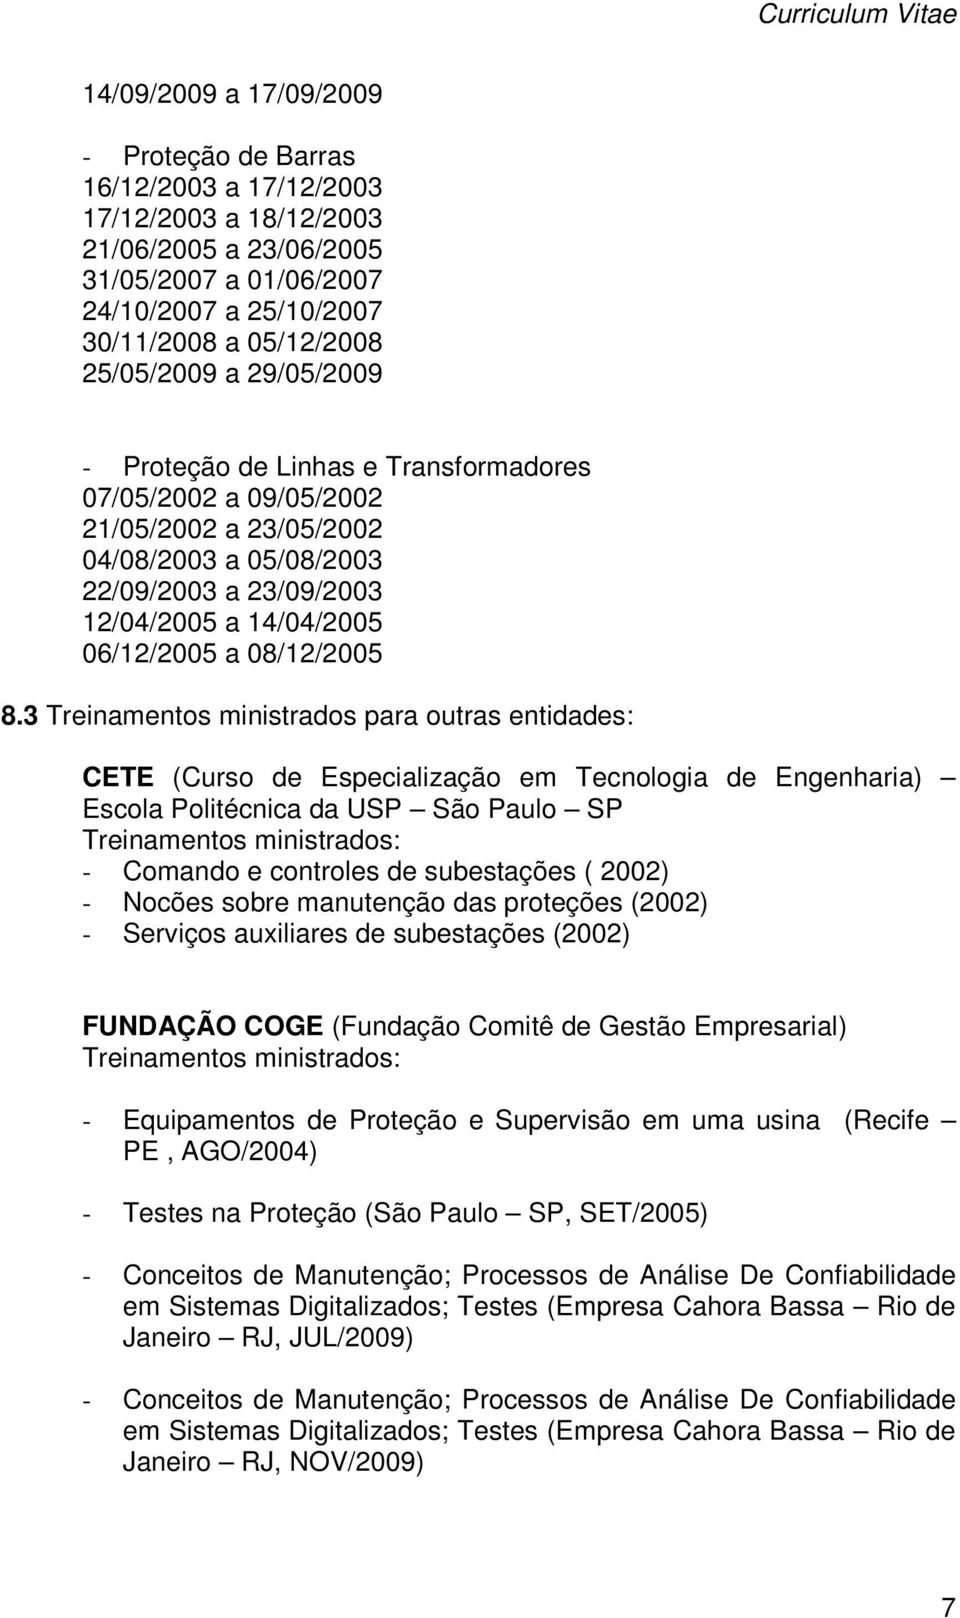 3 Treinamentos ministrados para outras entidades: CETE (Curso de Especialização em Tecnologia de Engenharia) Escola Politécnica da USP São Paulo SP Treinamentos ministrados: - Comando e controles de